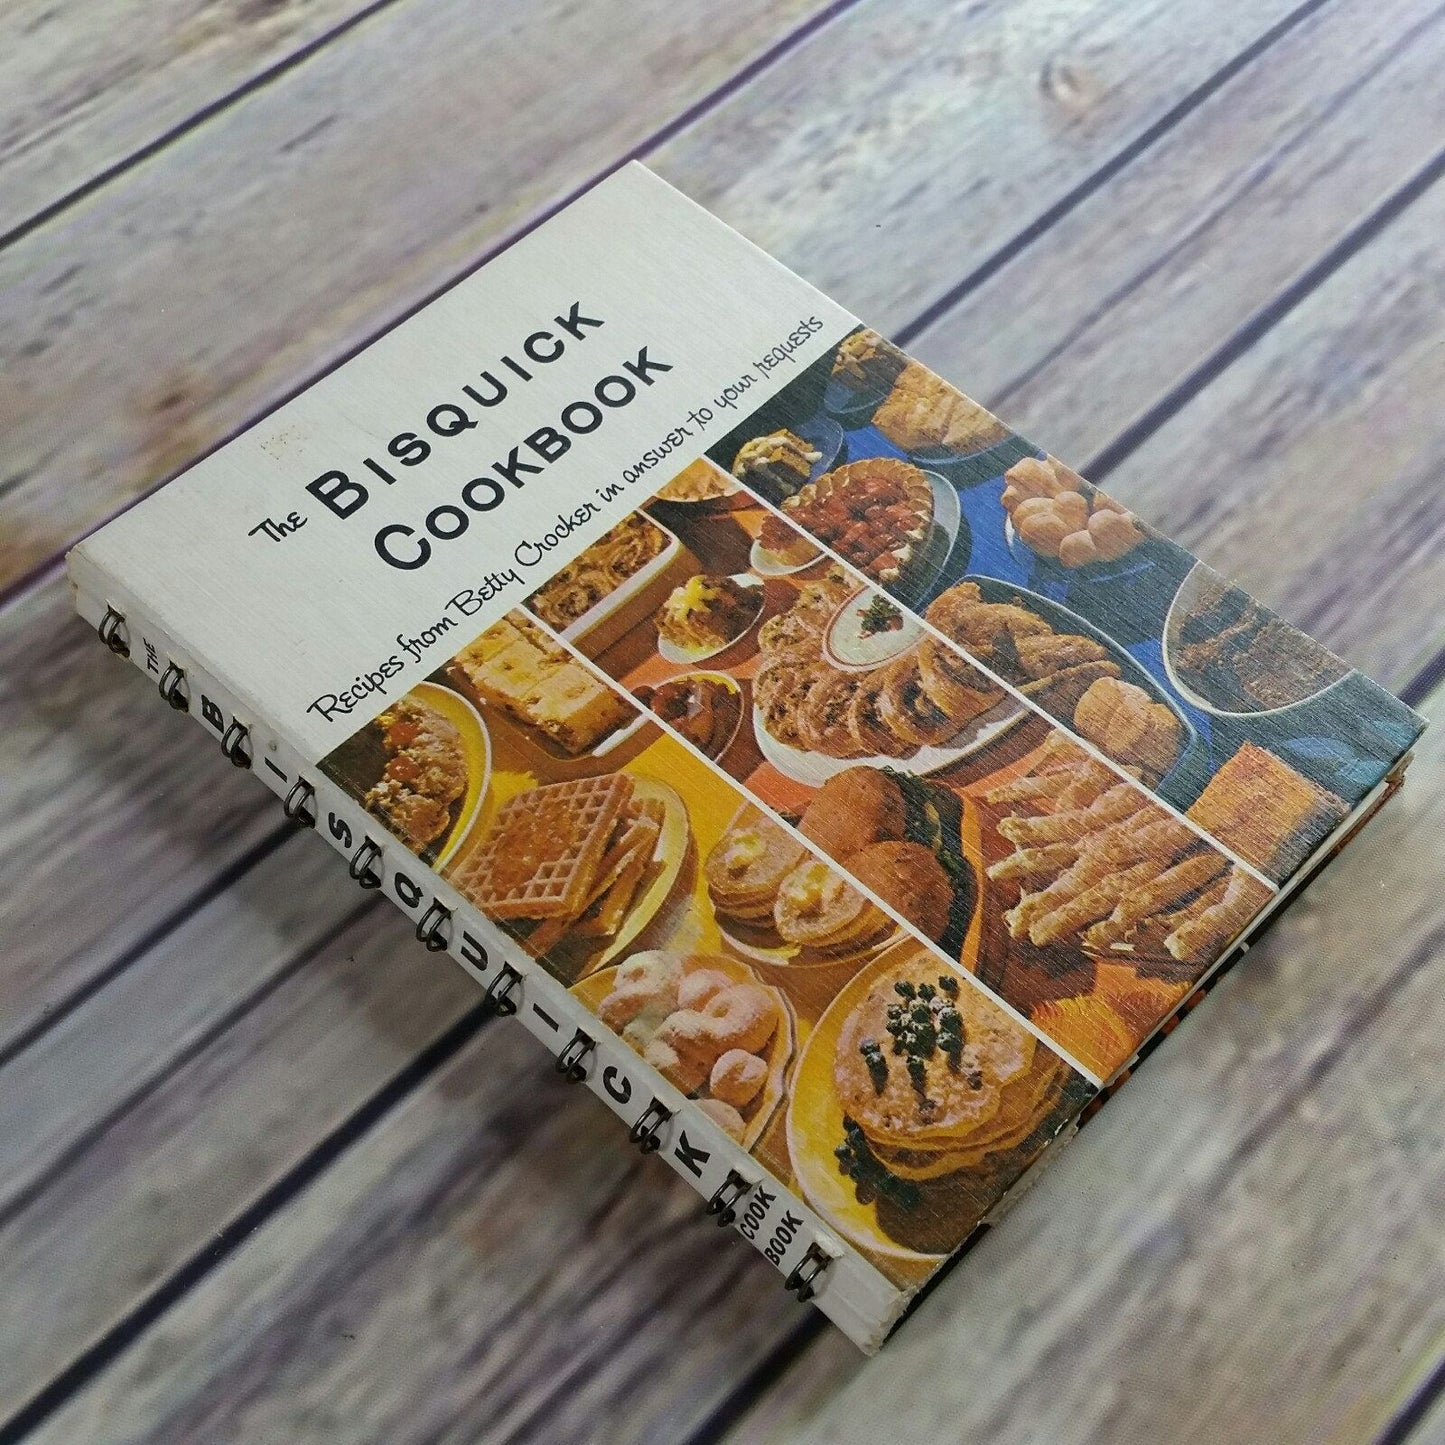 Vintage Cookbook Betty Crocker Bisquick Cookbook 1964 First Edition Spiral Bound Hardcover